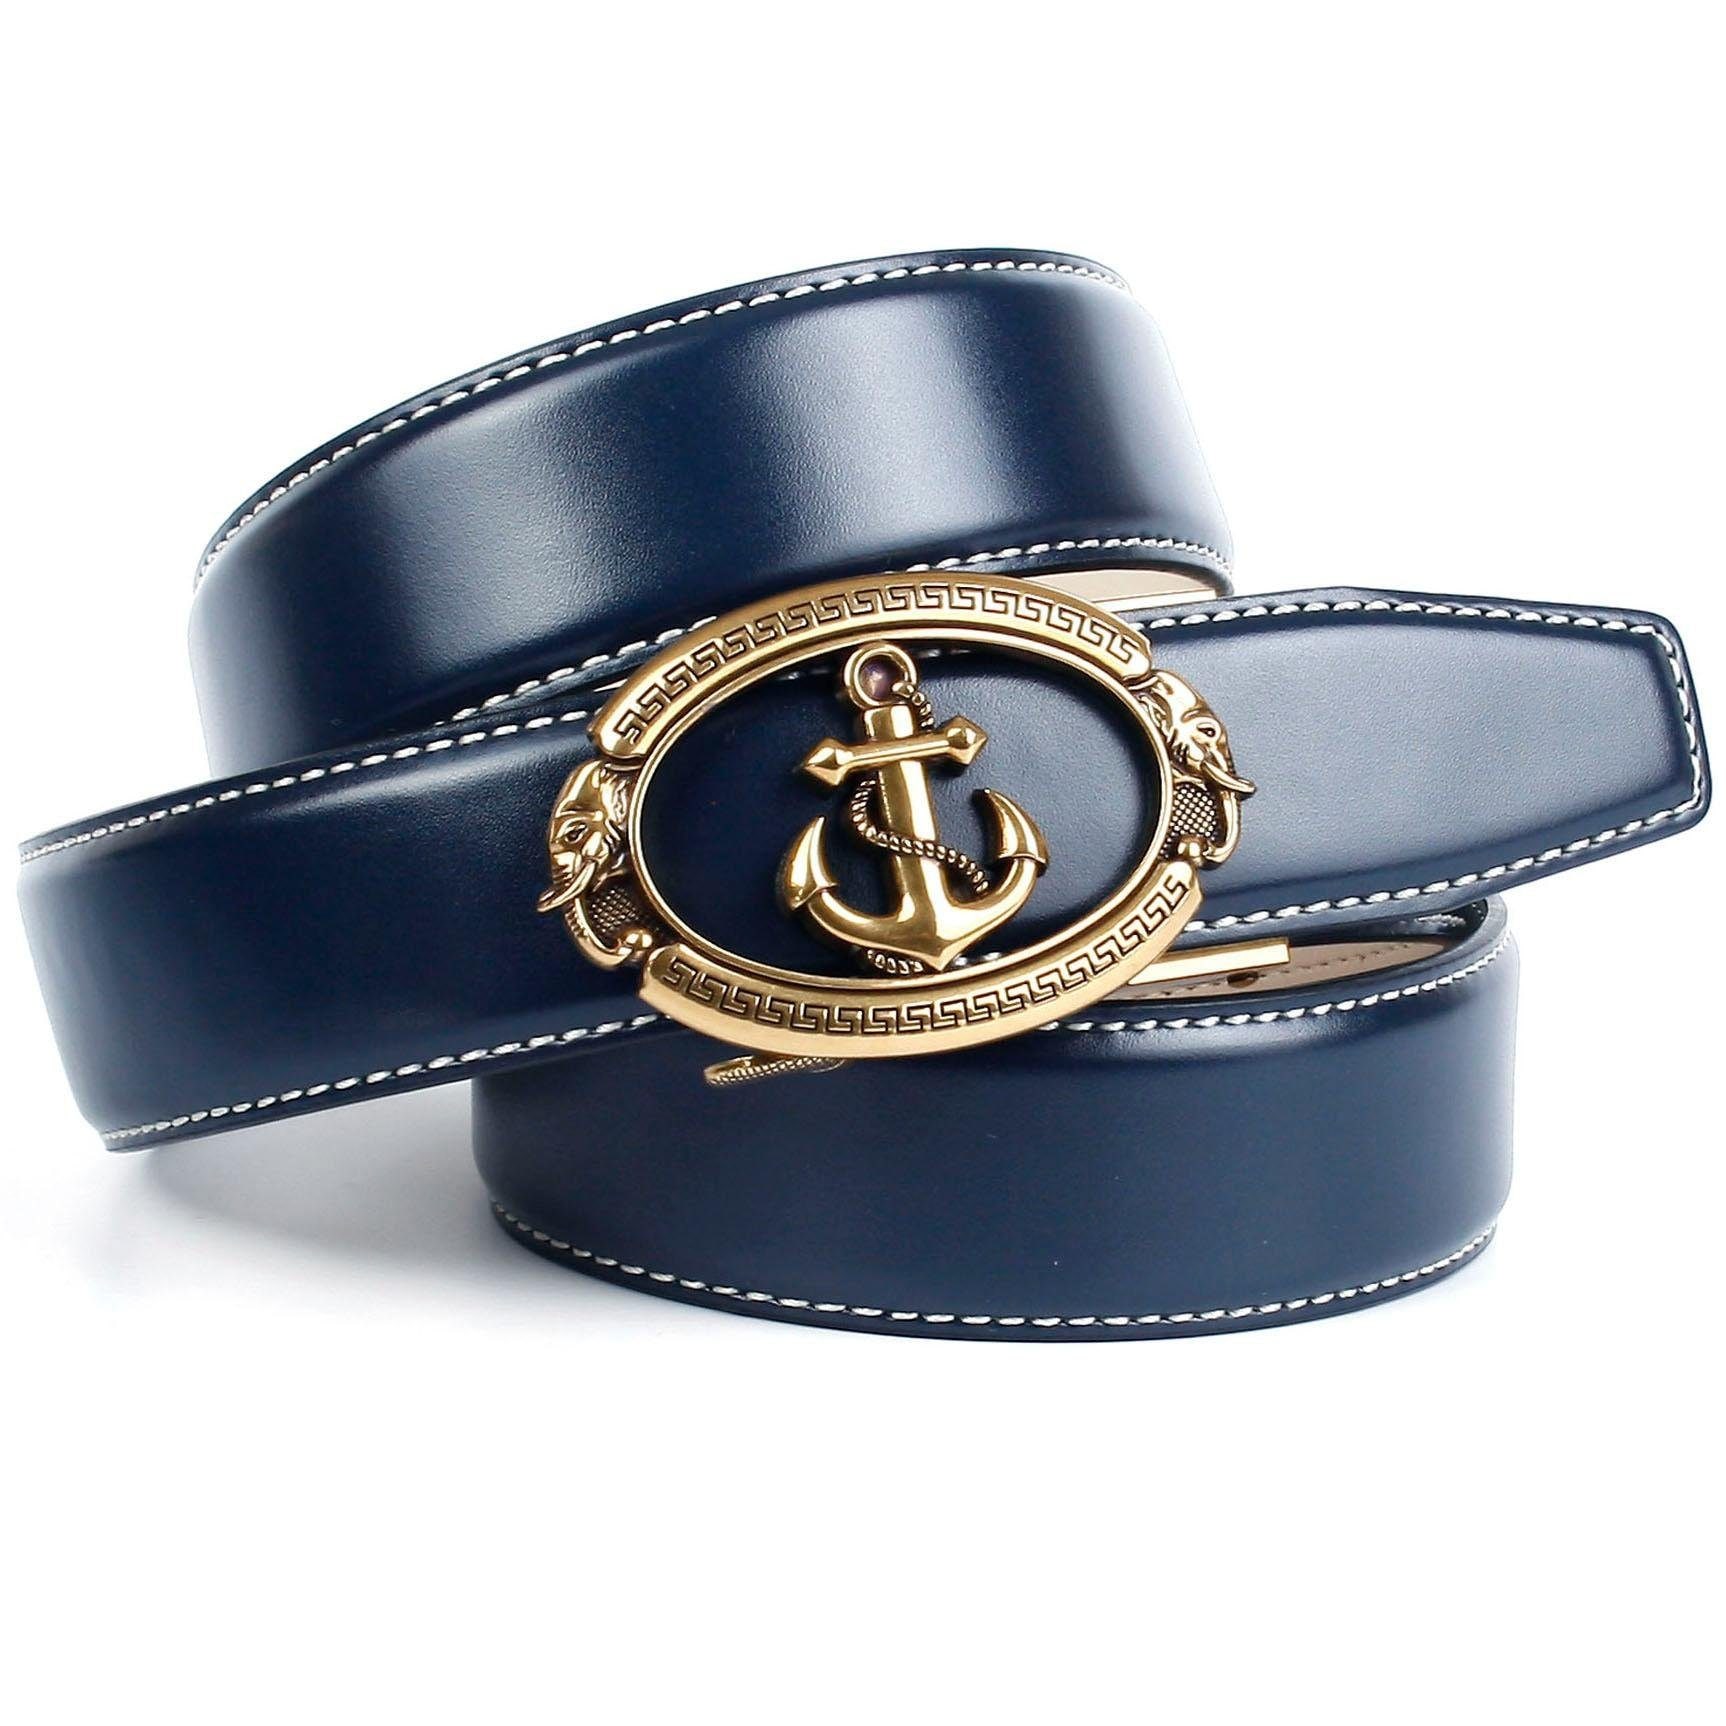 Anthoni Crown Ledergürtel, mit Anker-Schließe online kaufen bei OTTO | Anzuggürtel